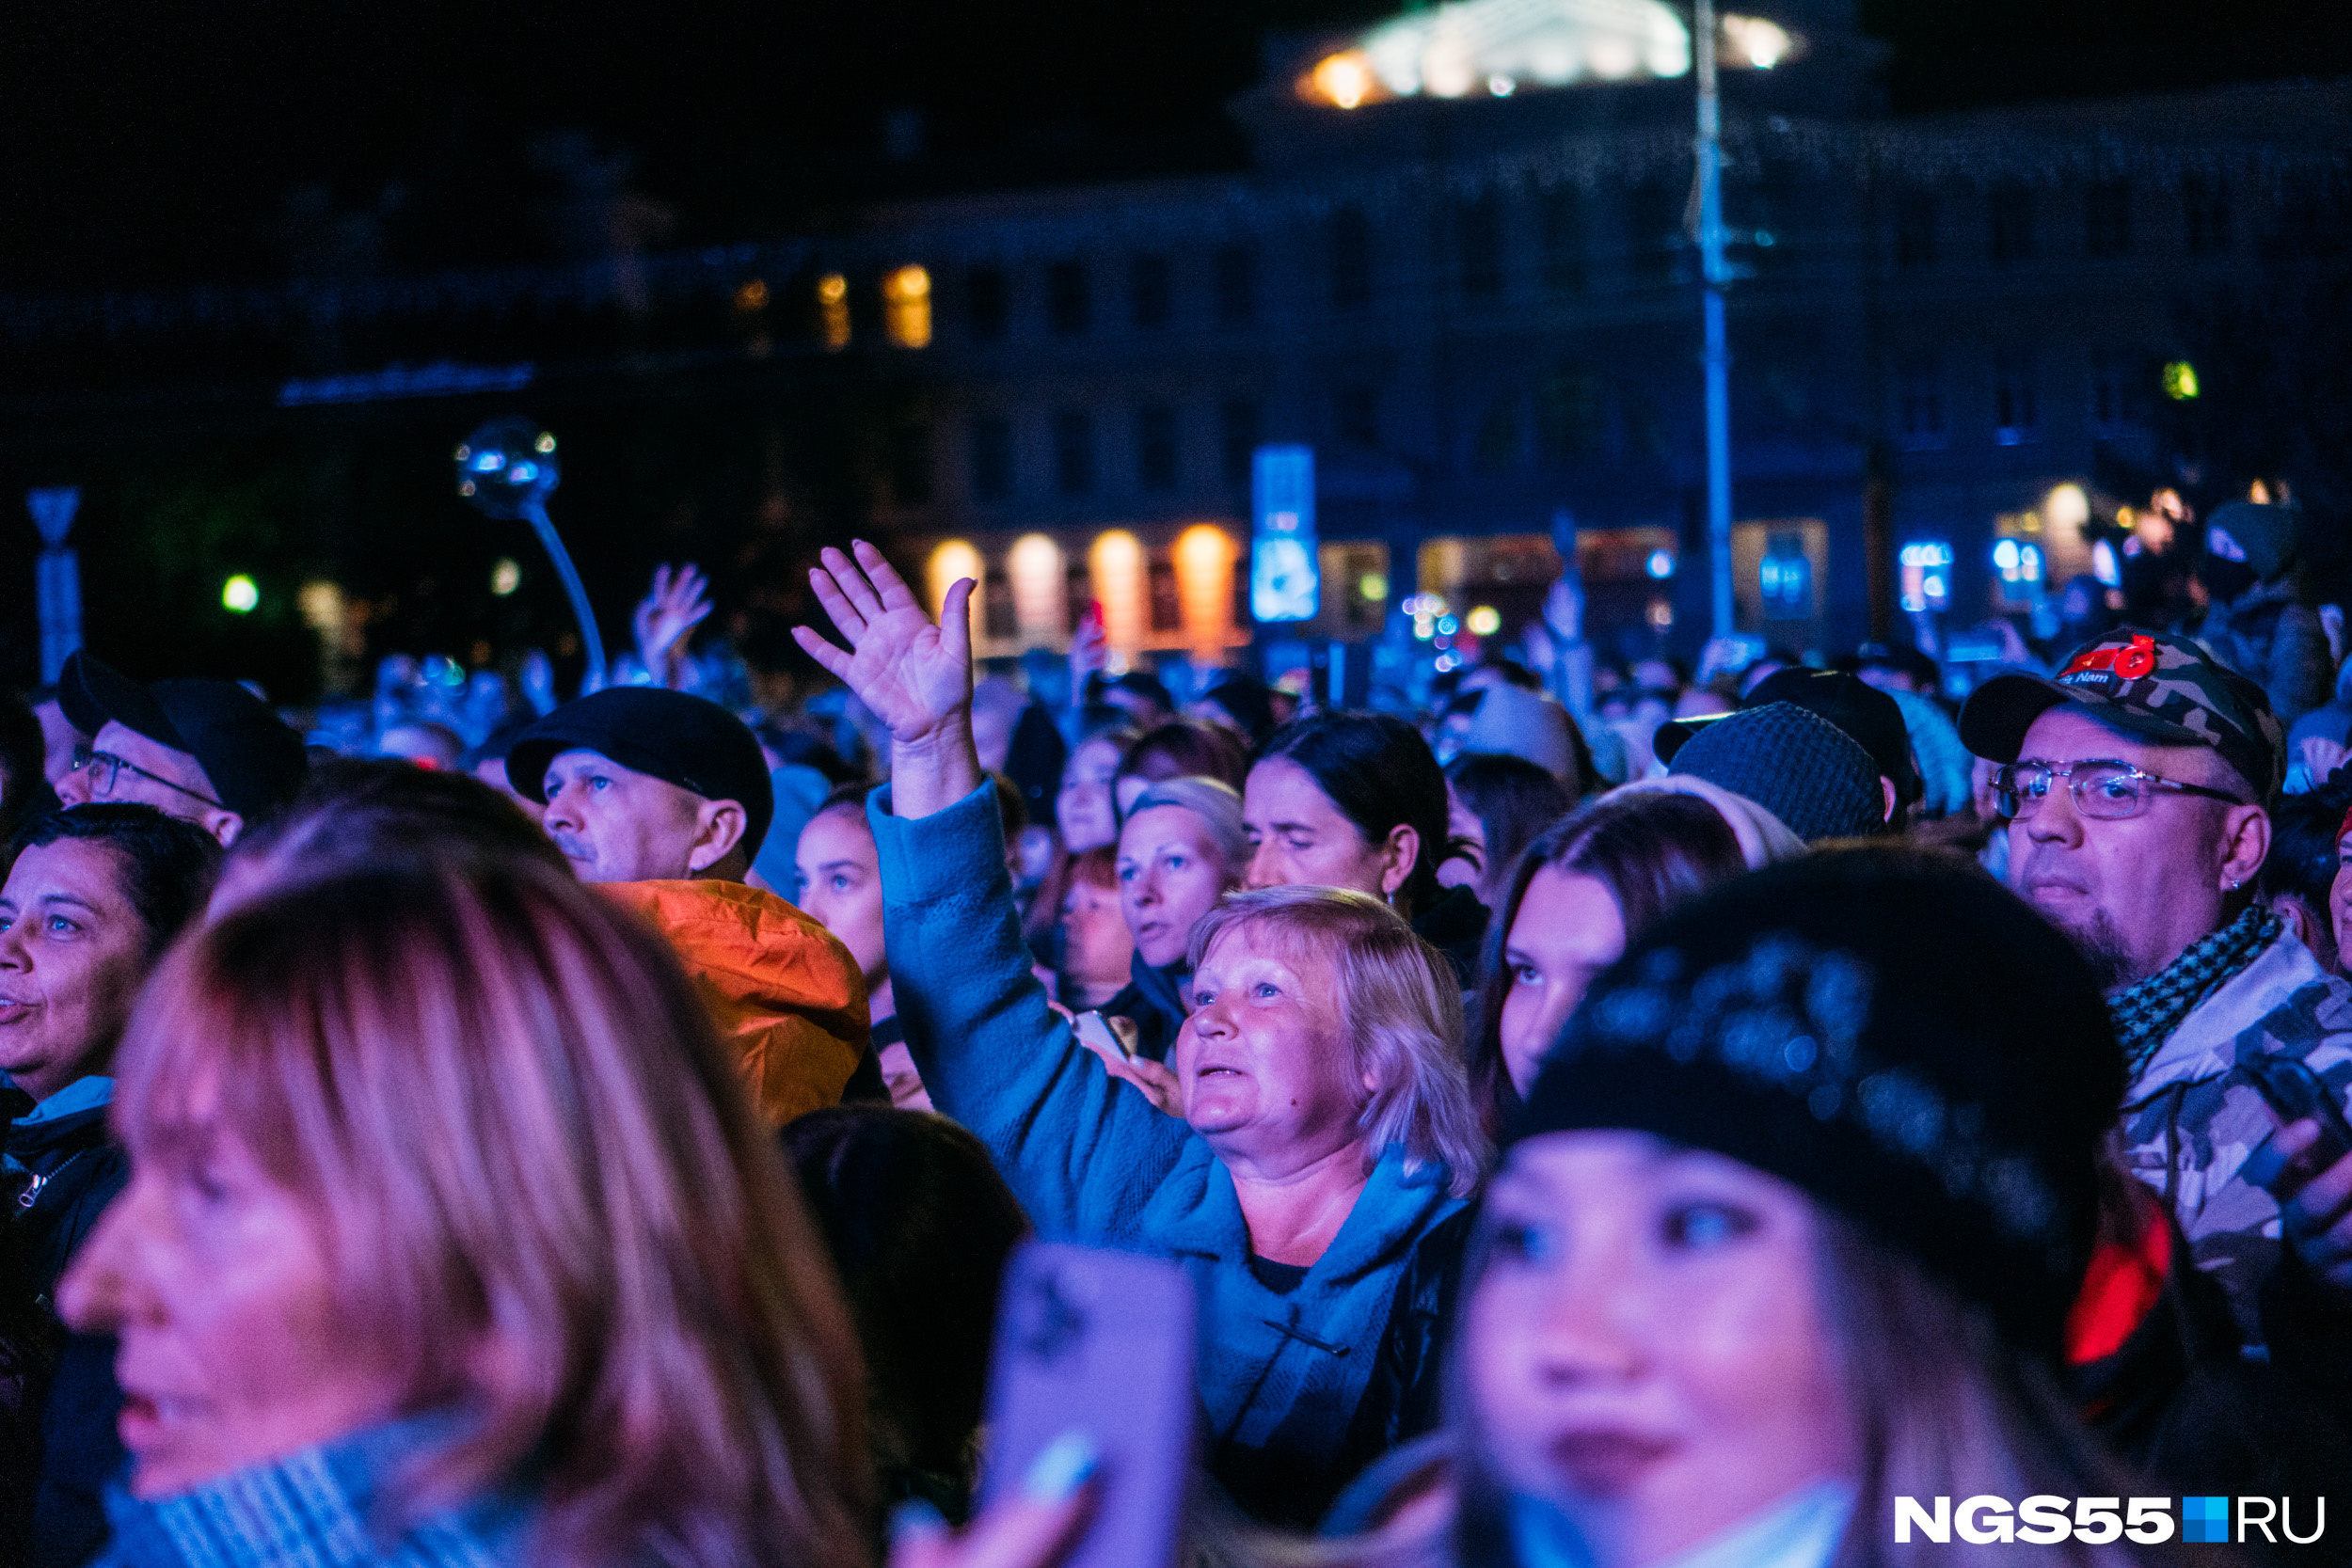 Возраст не помеха на концерте Преснякова — молодежь со смартфонами неплохо соседствует с людьми постарше